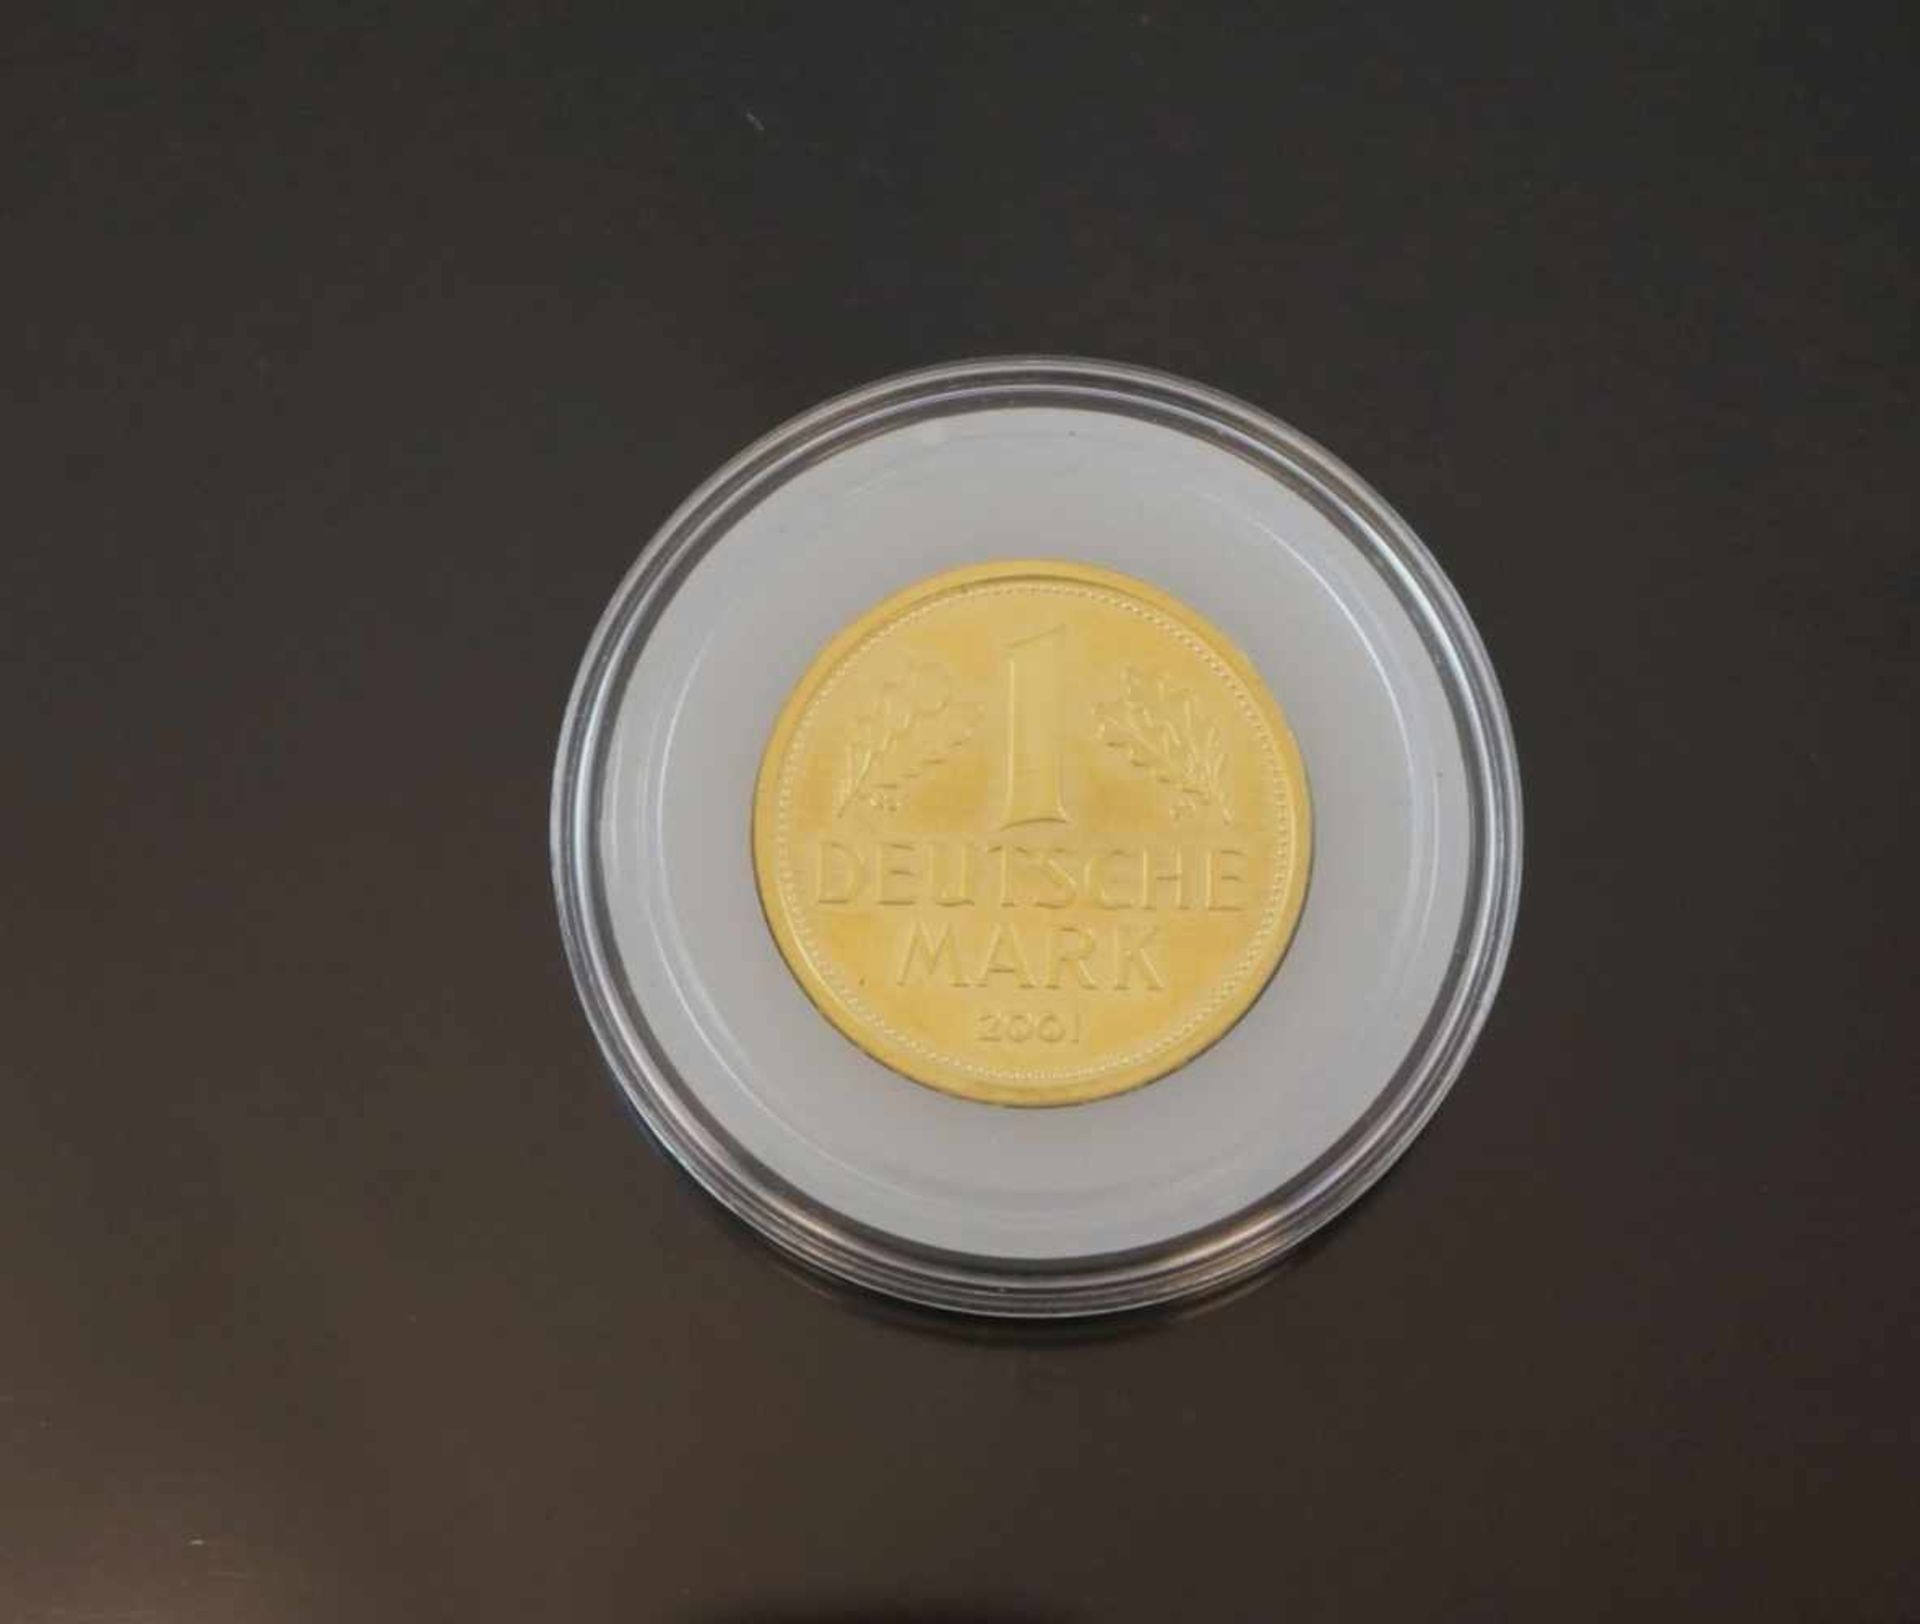 1 Münze mit einem Nennwert von 1 Deutsche MarkMaterial: 999 GoldPrägebuchstabe: FGewicht: 12 Gramm